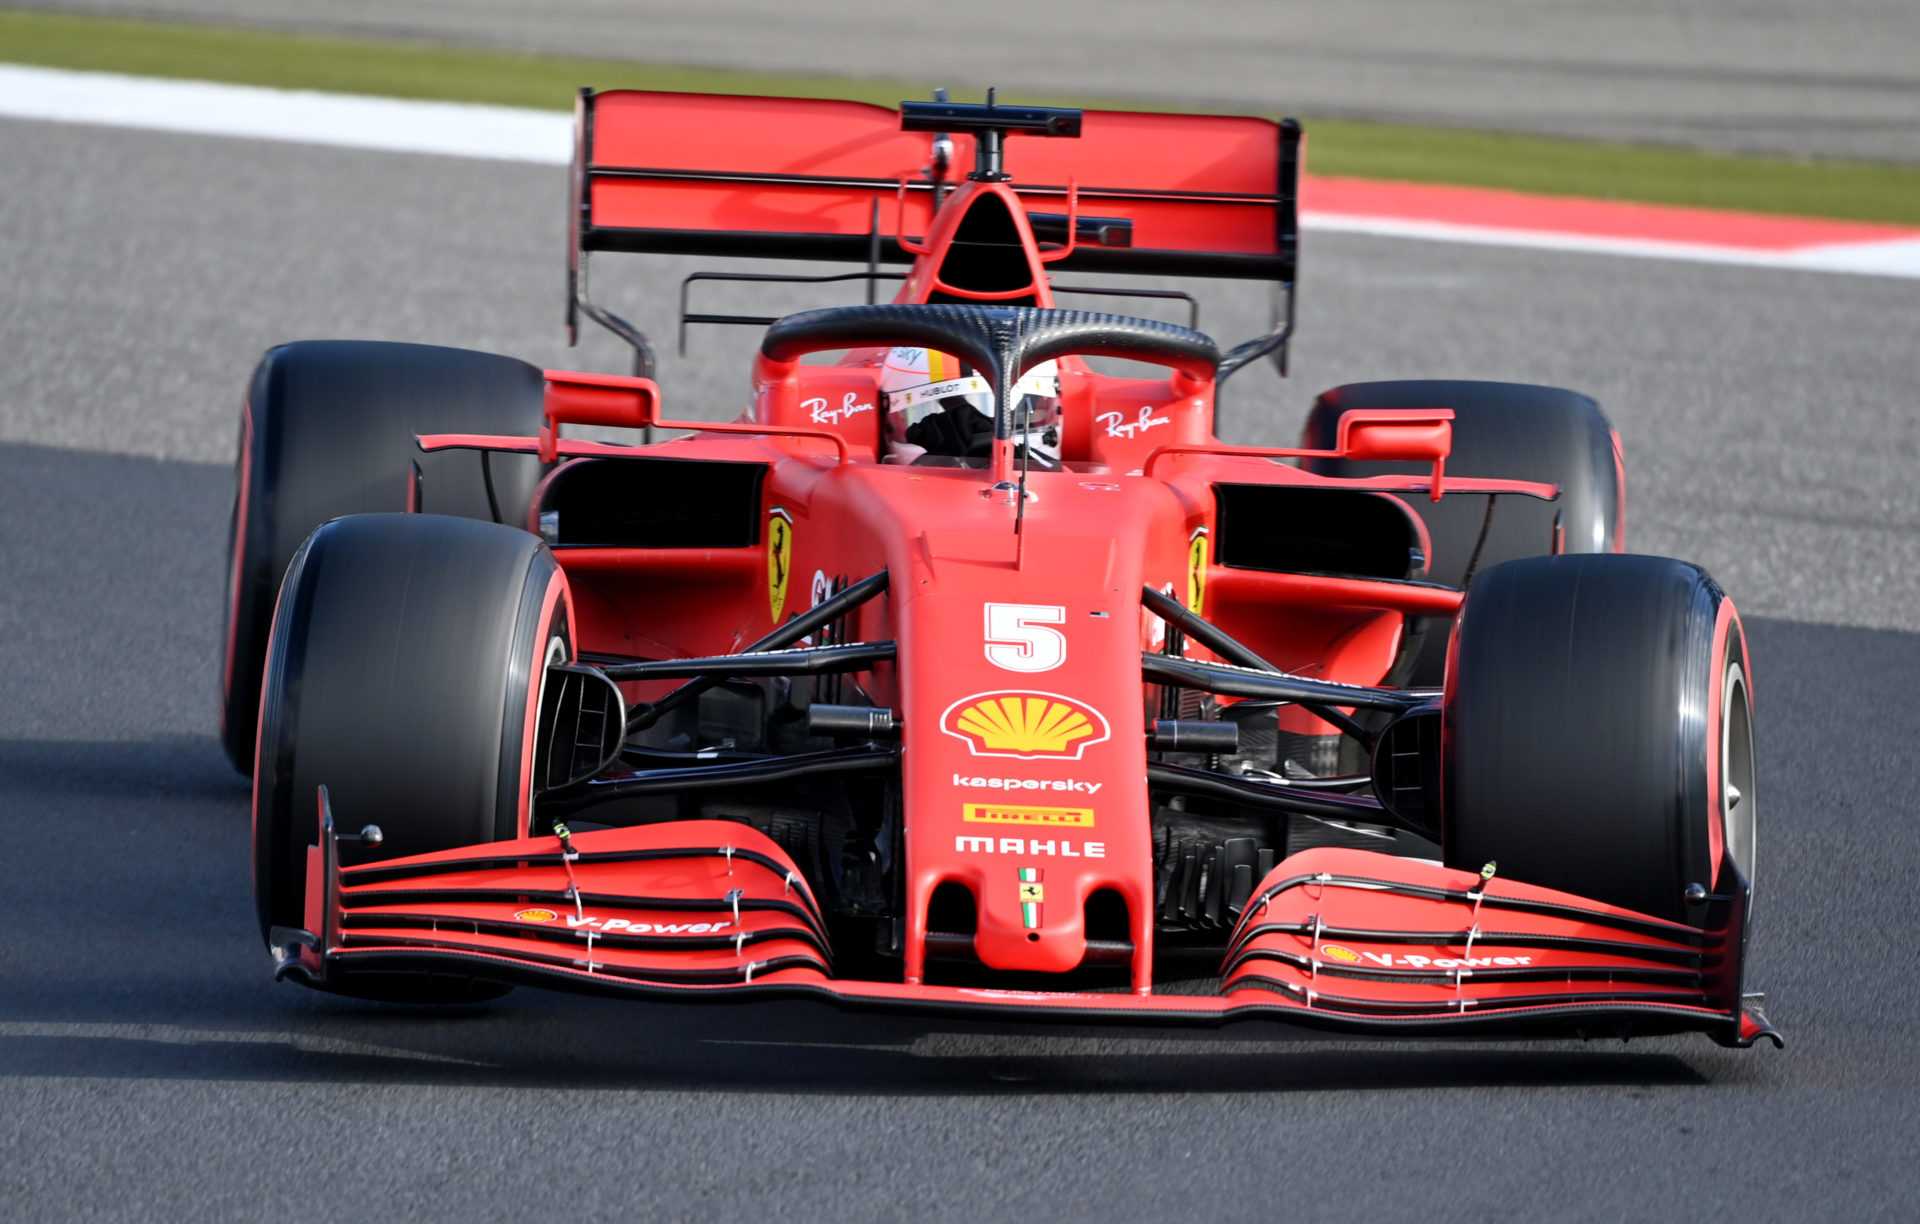 Ferrari F1 a des objectifs très ambitieux pour le reste de la saison